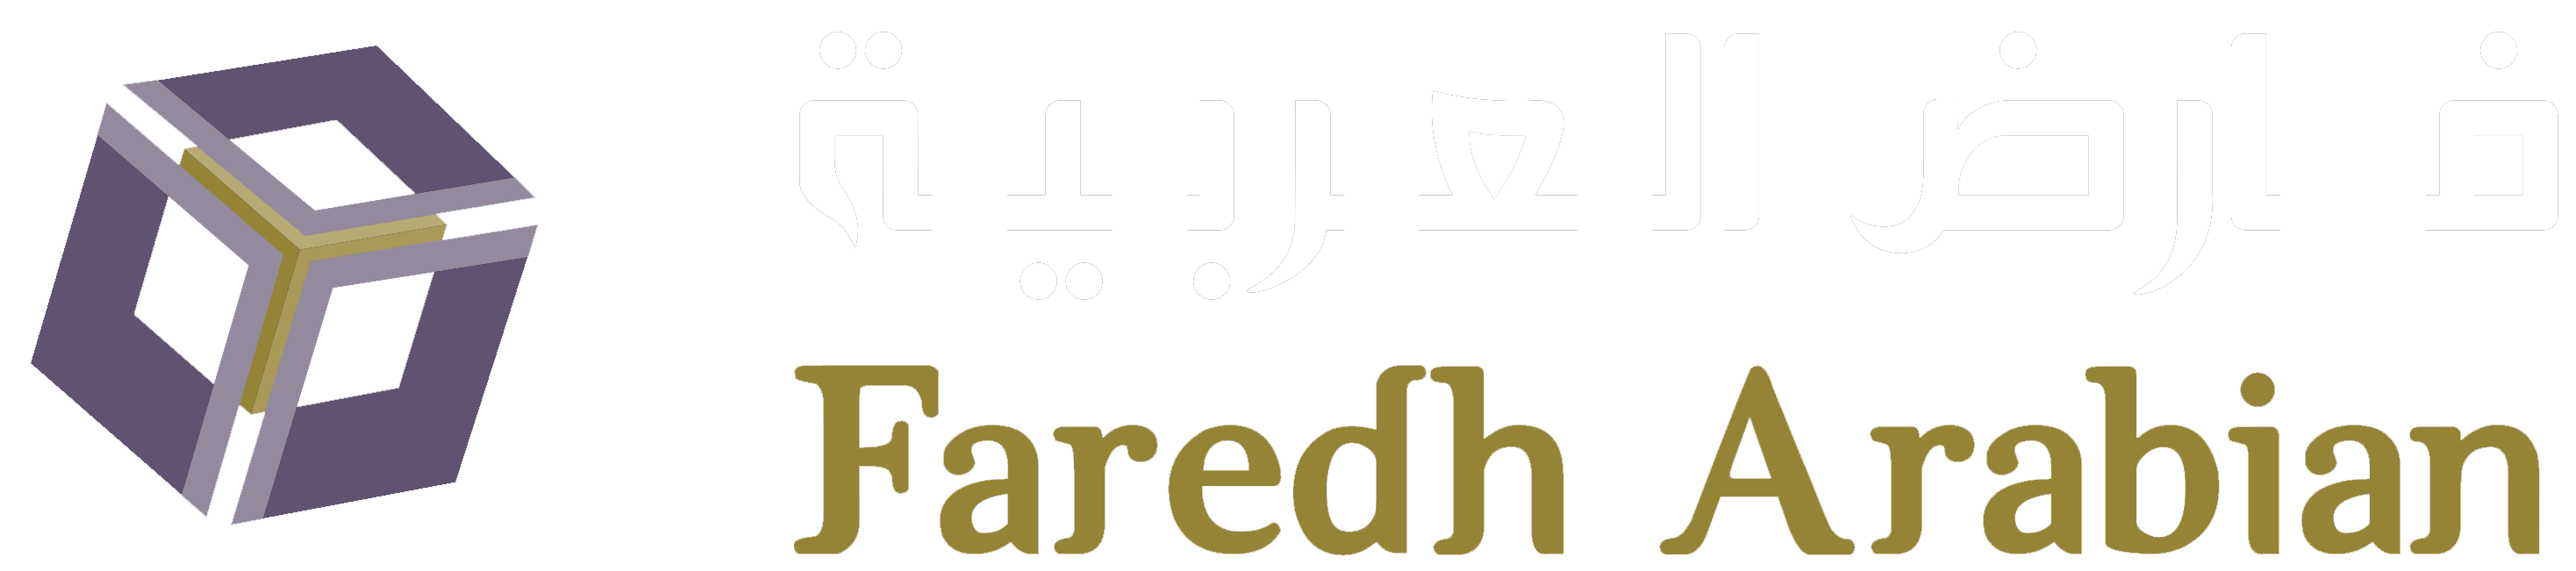 Faredh Arabian